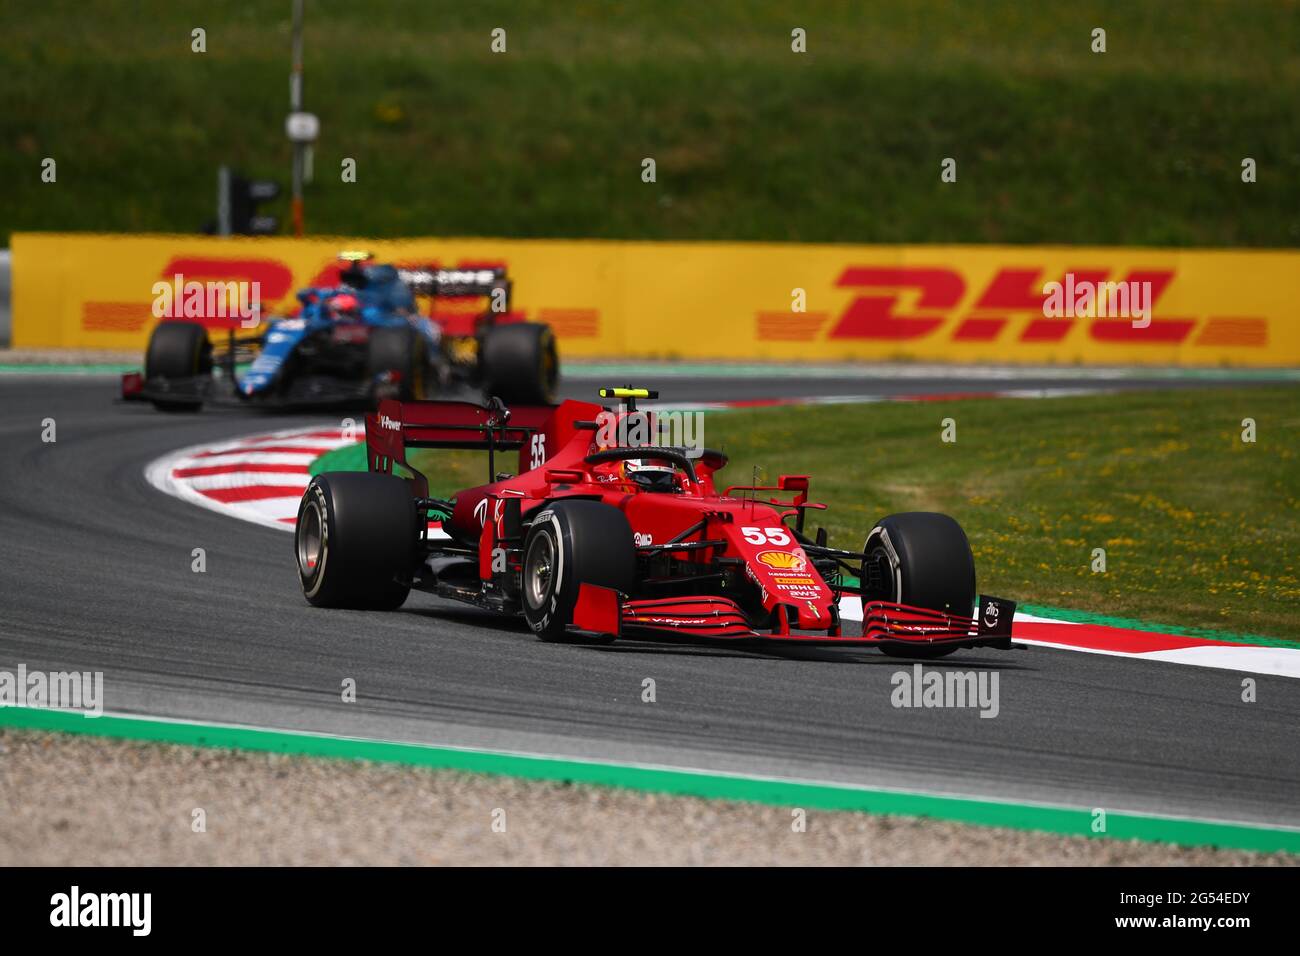 55 Carlos Sainz Jr Scuderia Ferrari. Formula 1 Campionato del mondo 2021, GP di Stiria 2021, 24-27 giugno 2021 Foto Stock